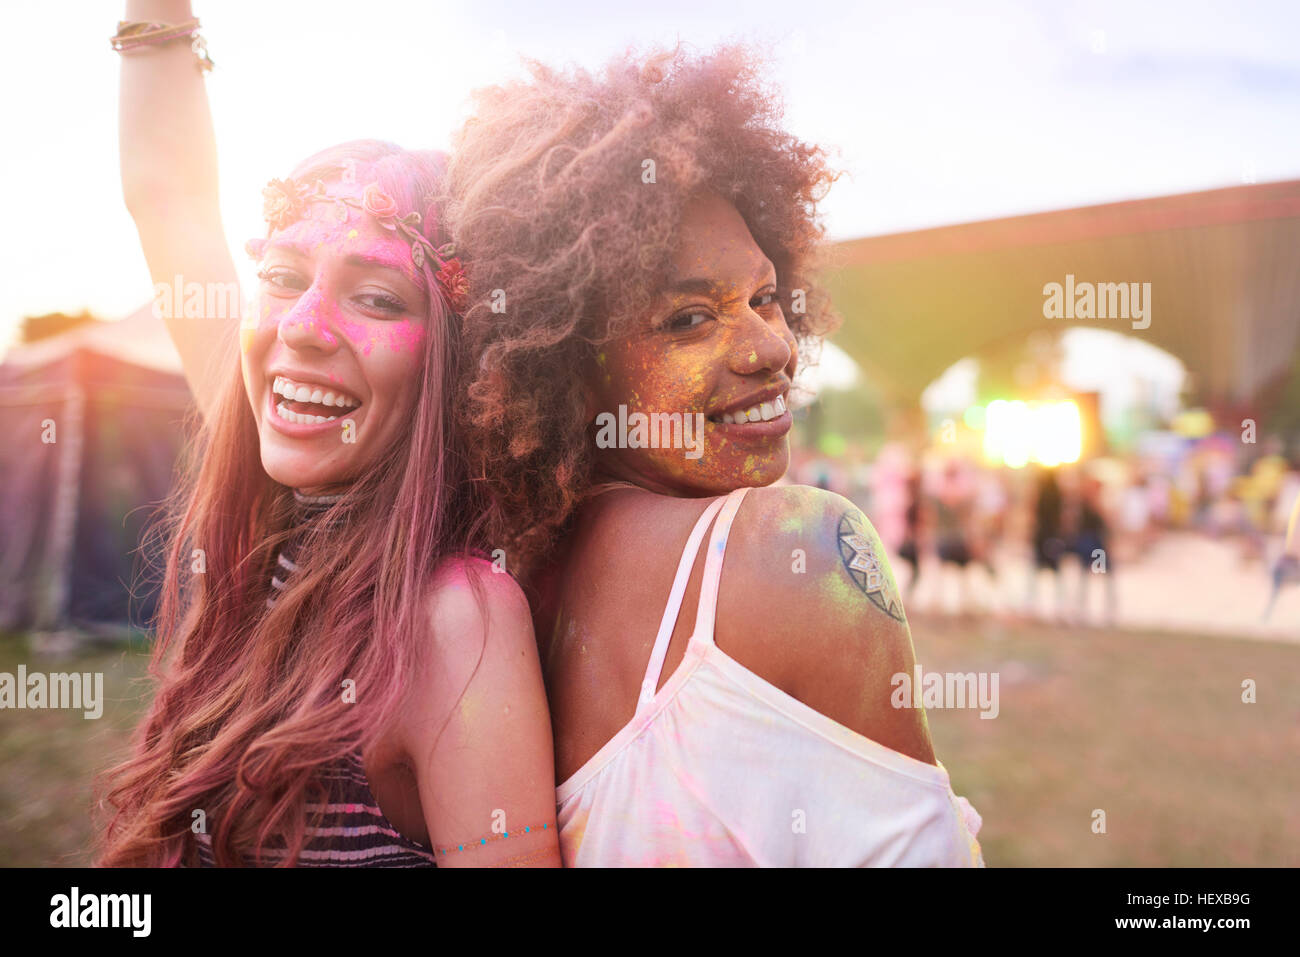 Ritratto di due amici di sesso femminile al festival, coperto di polvere colorata vernice Foto Stock